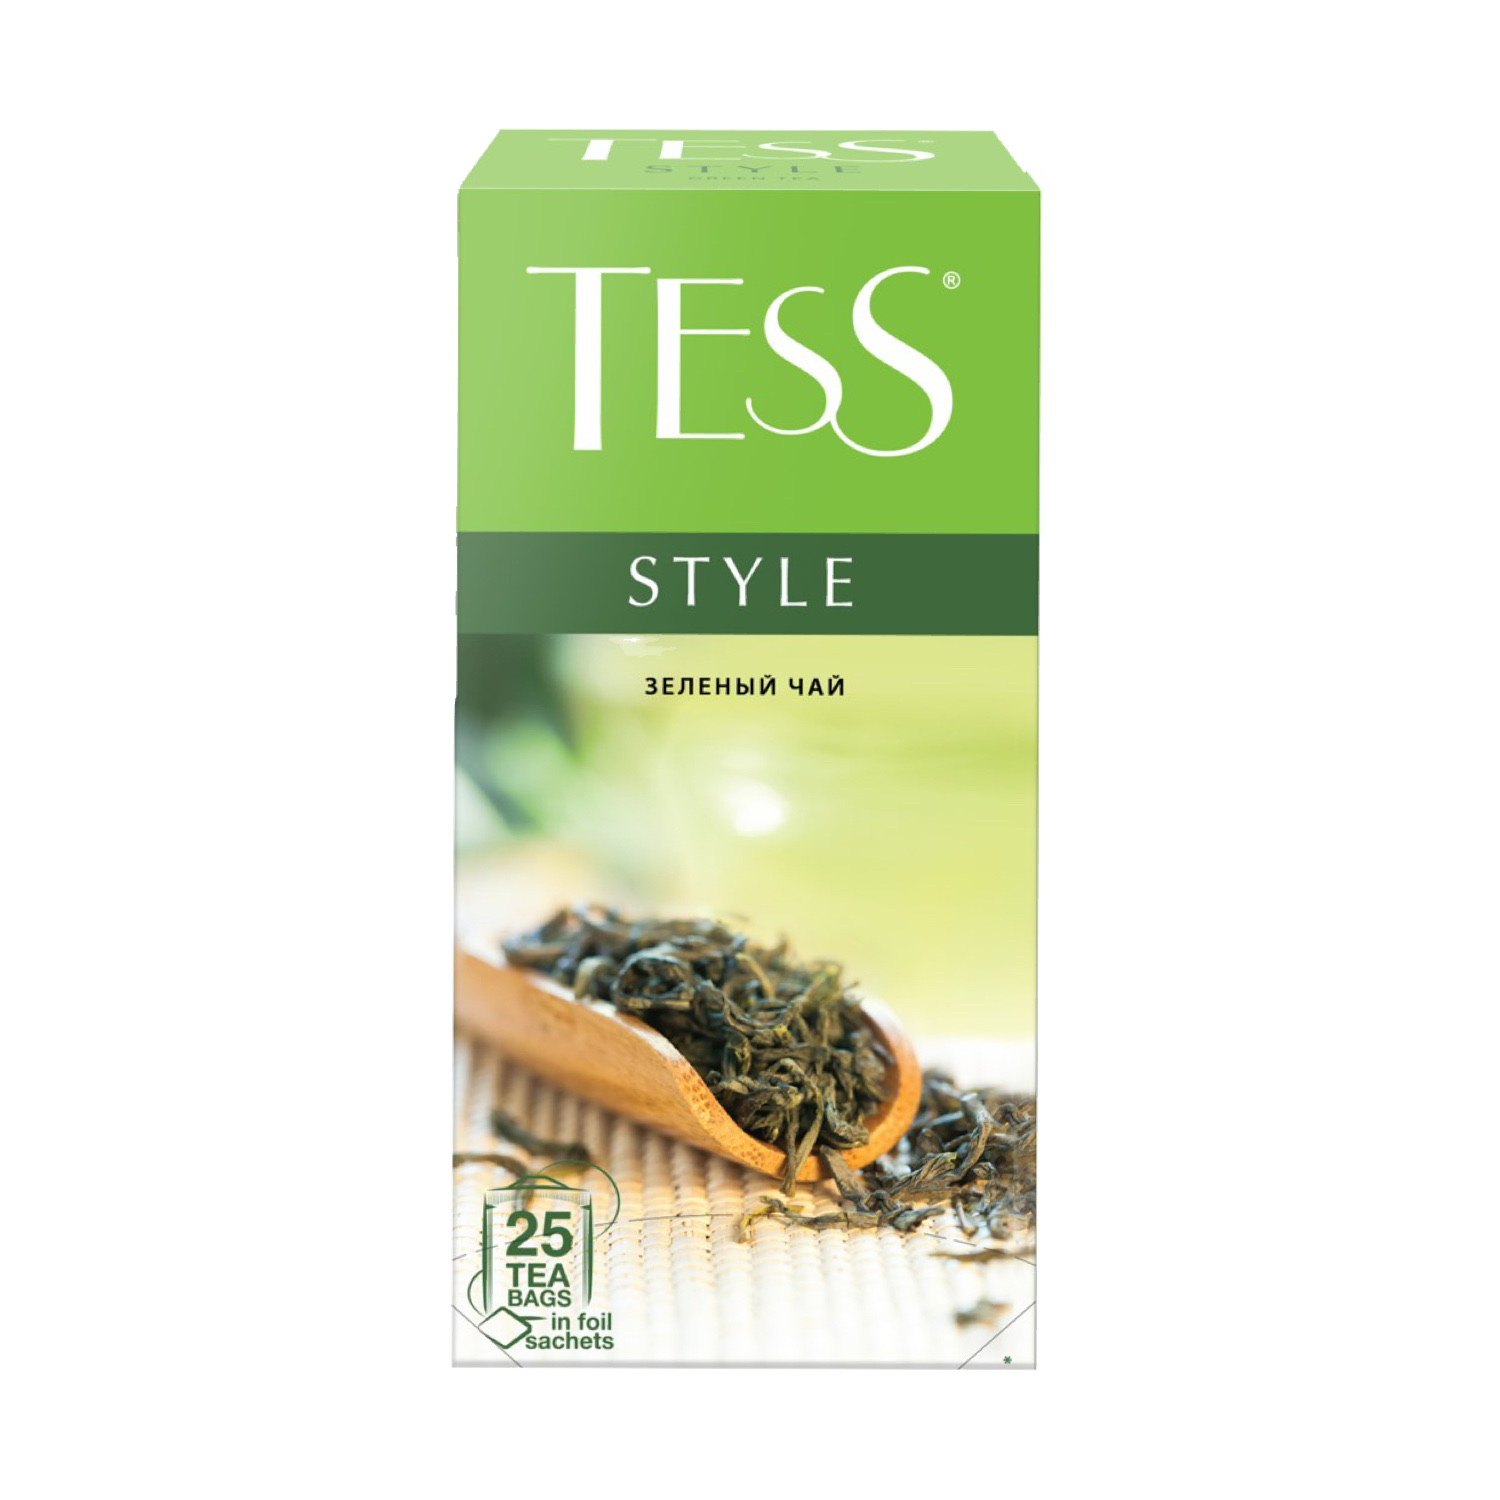 Чай ТЕСС Стаил (2гх25) зелёный